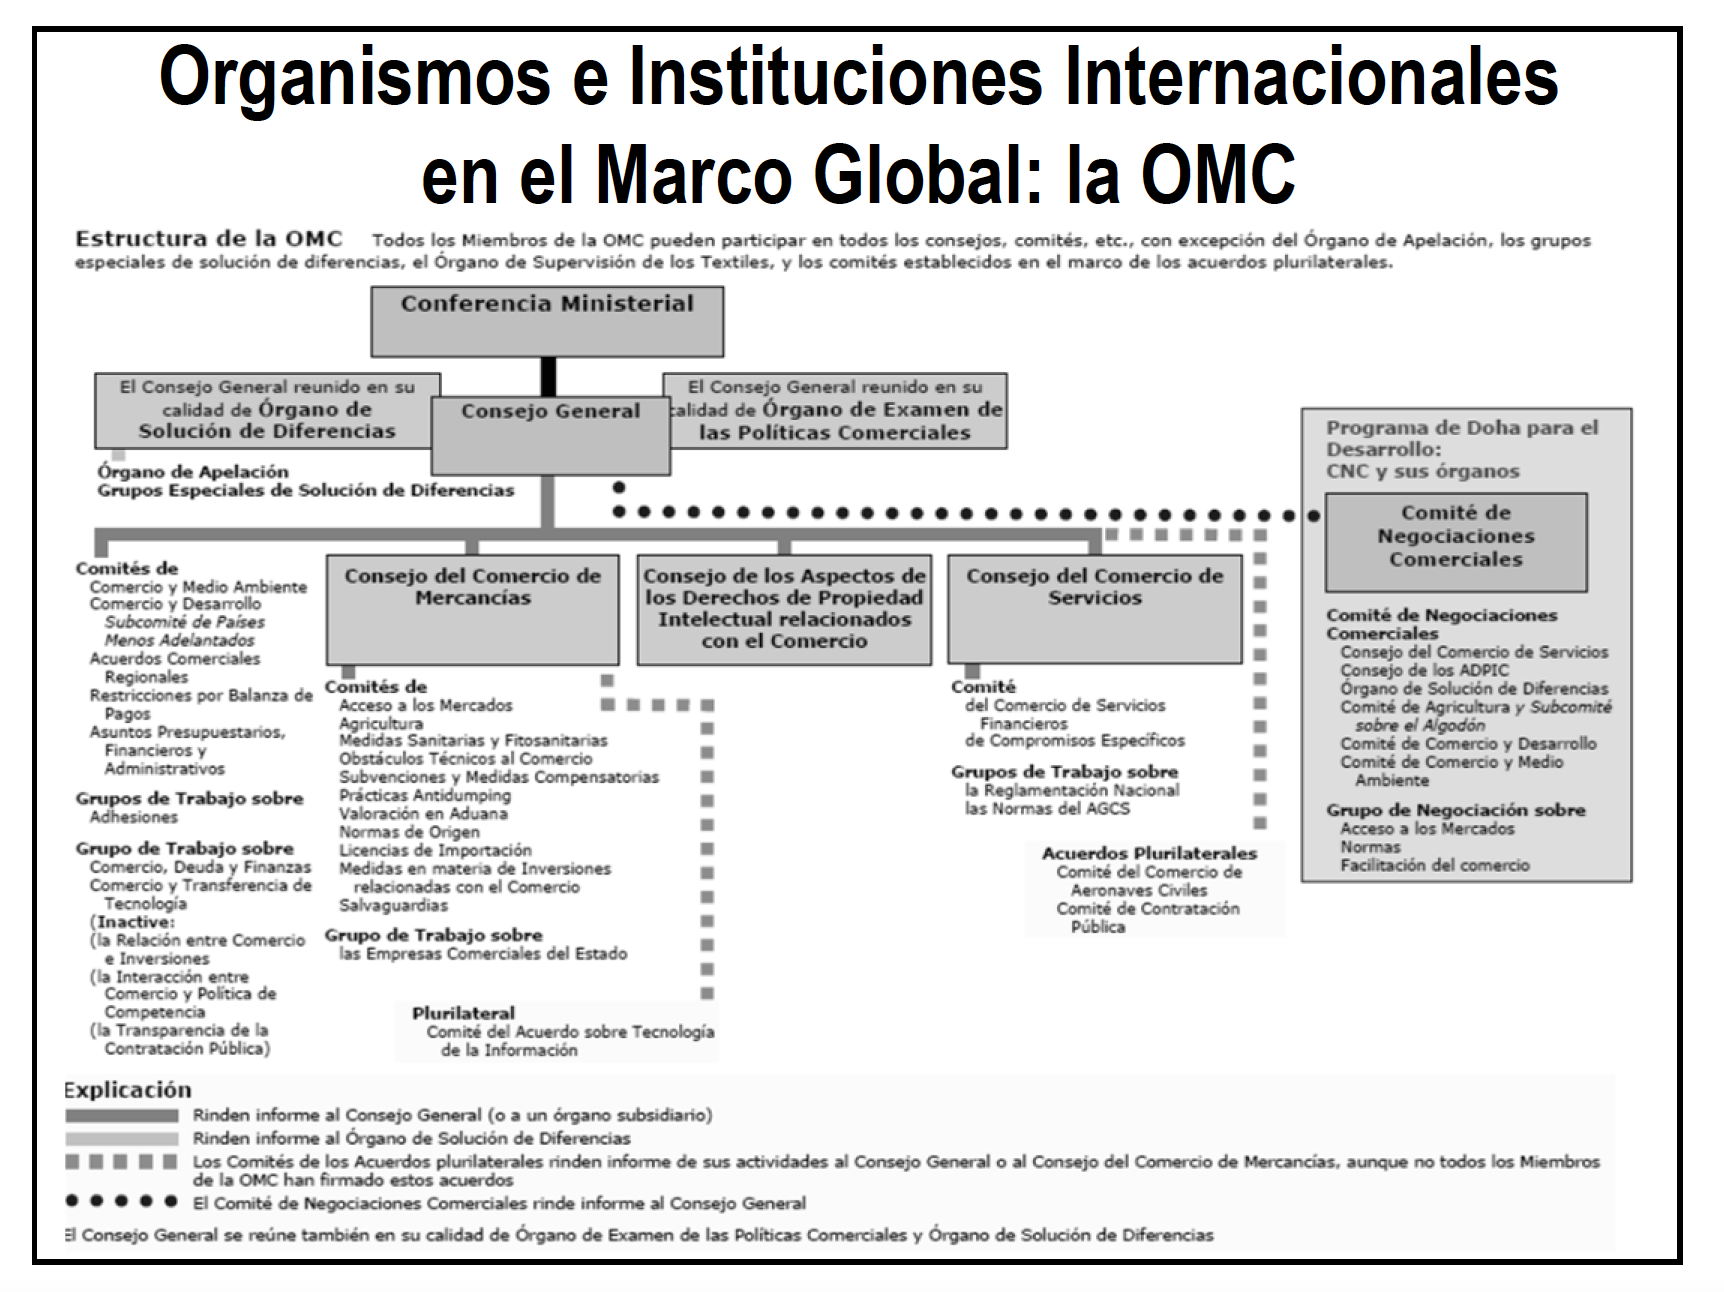 Organismos e Instituciones Internacionales en el Marco Global La OMC